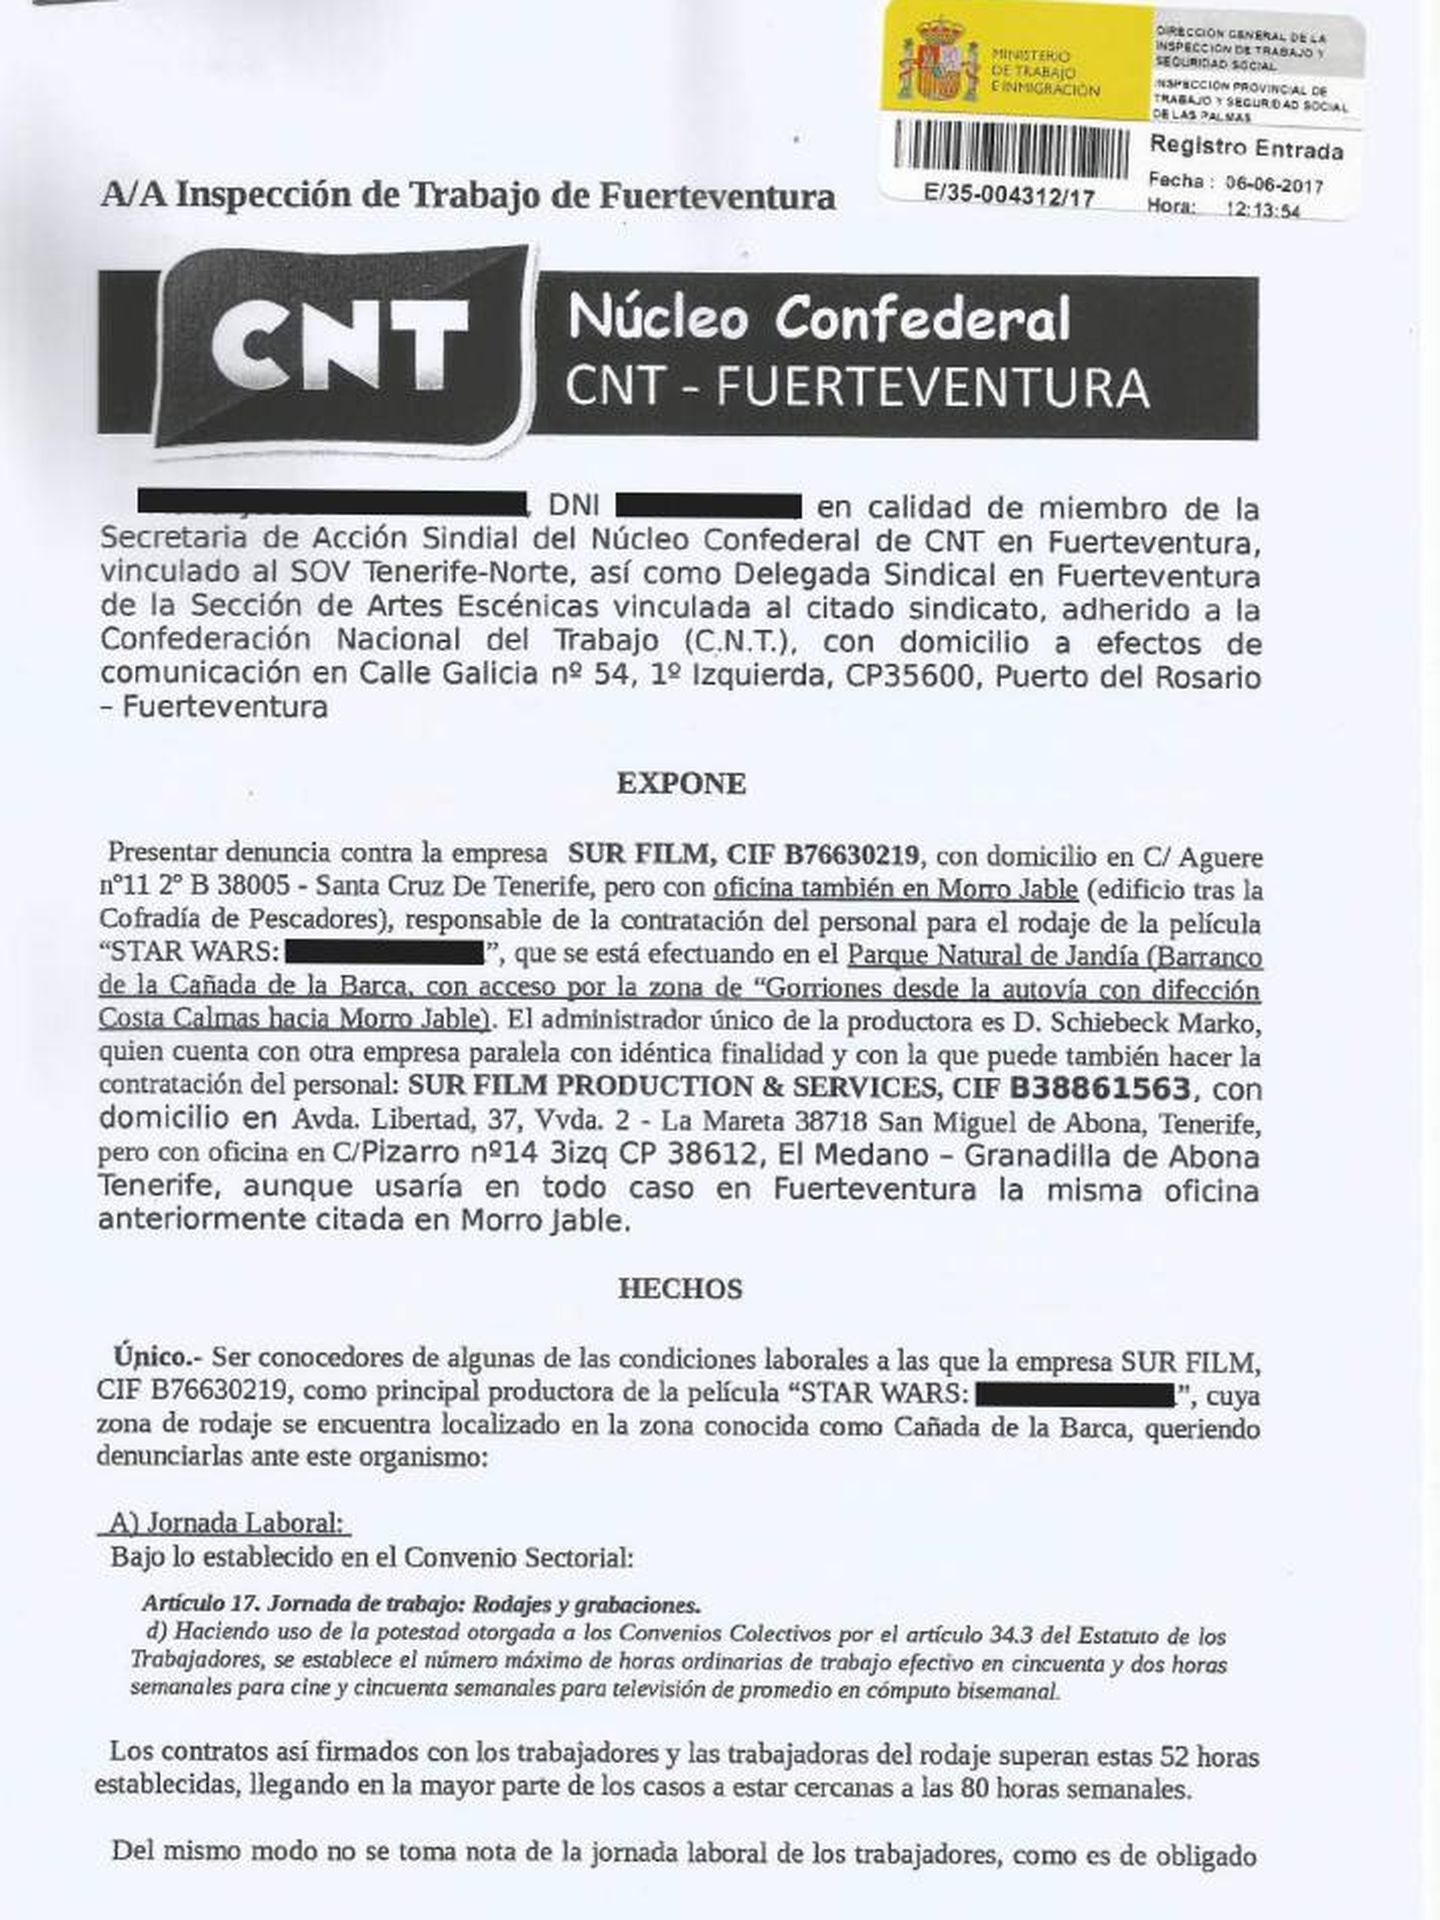 Extracto de la denuncia de la CNT ante Trabajo